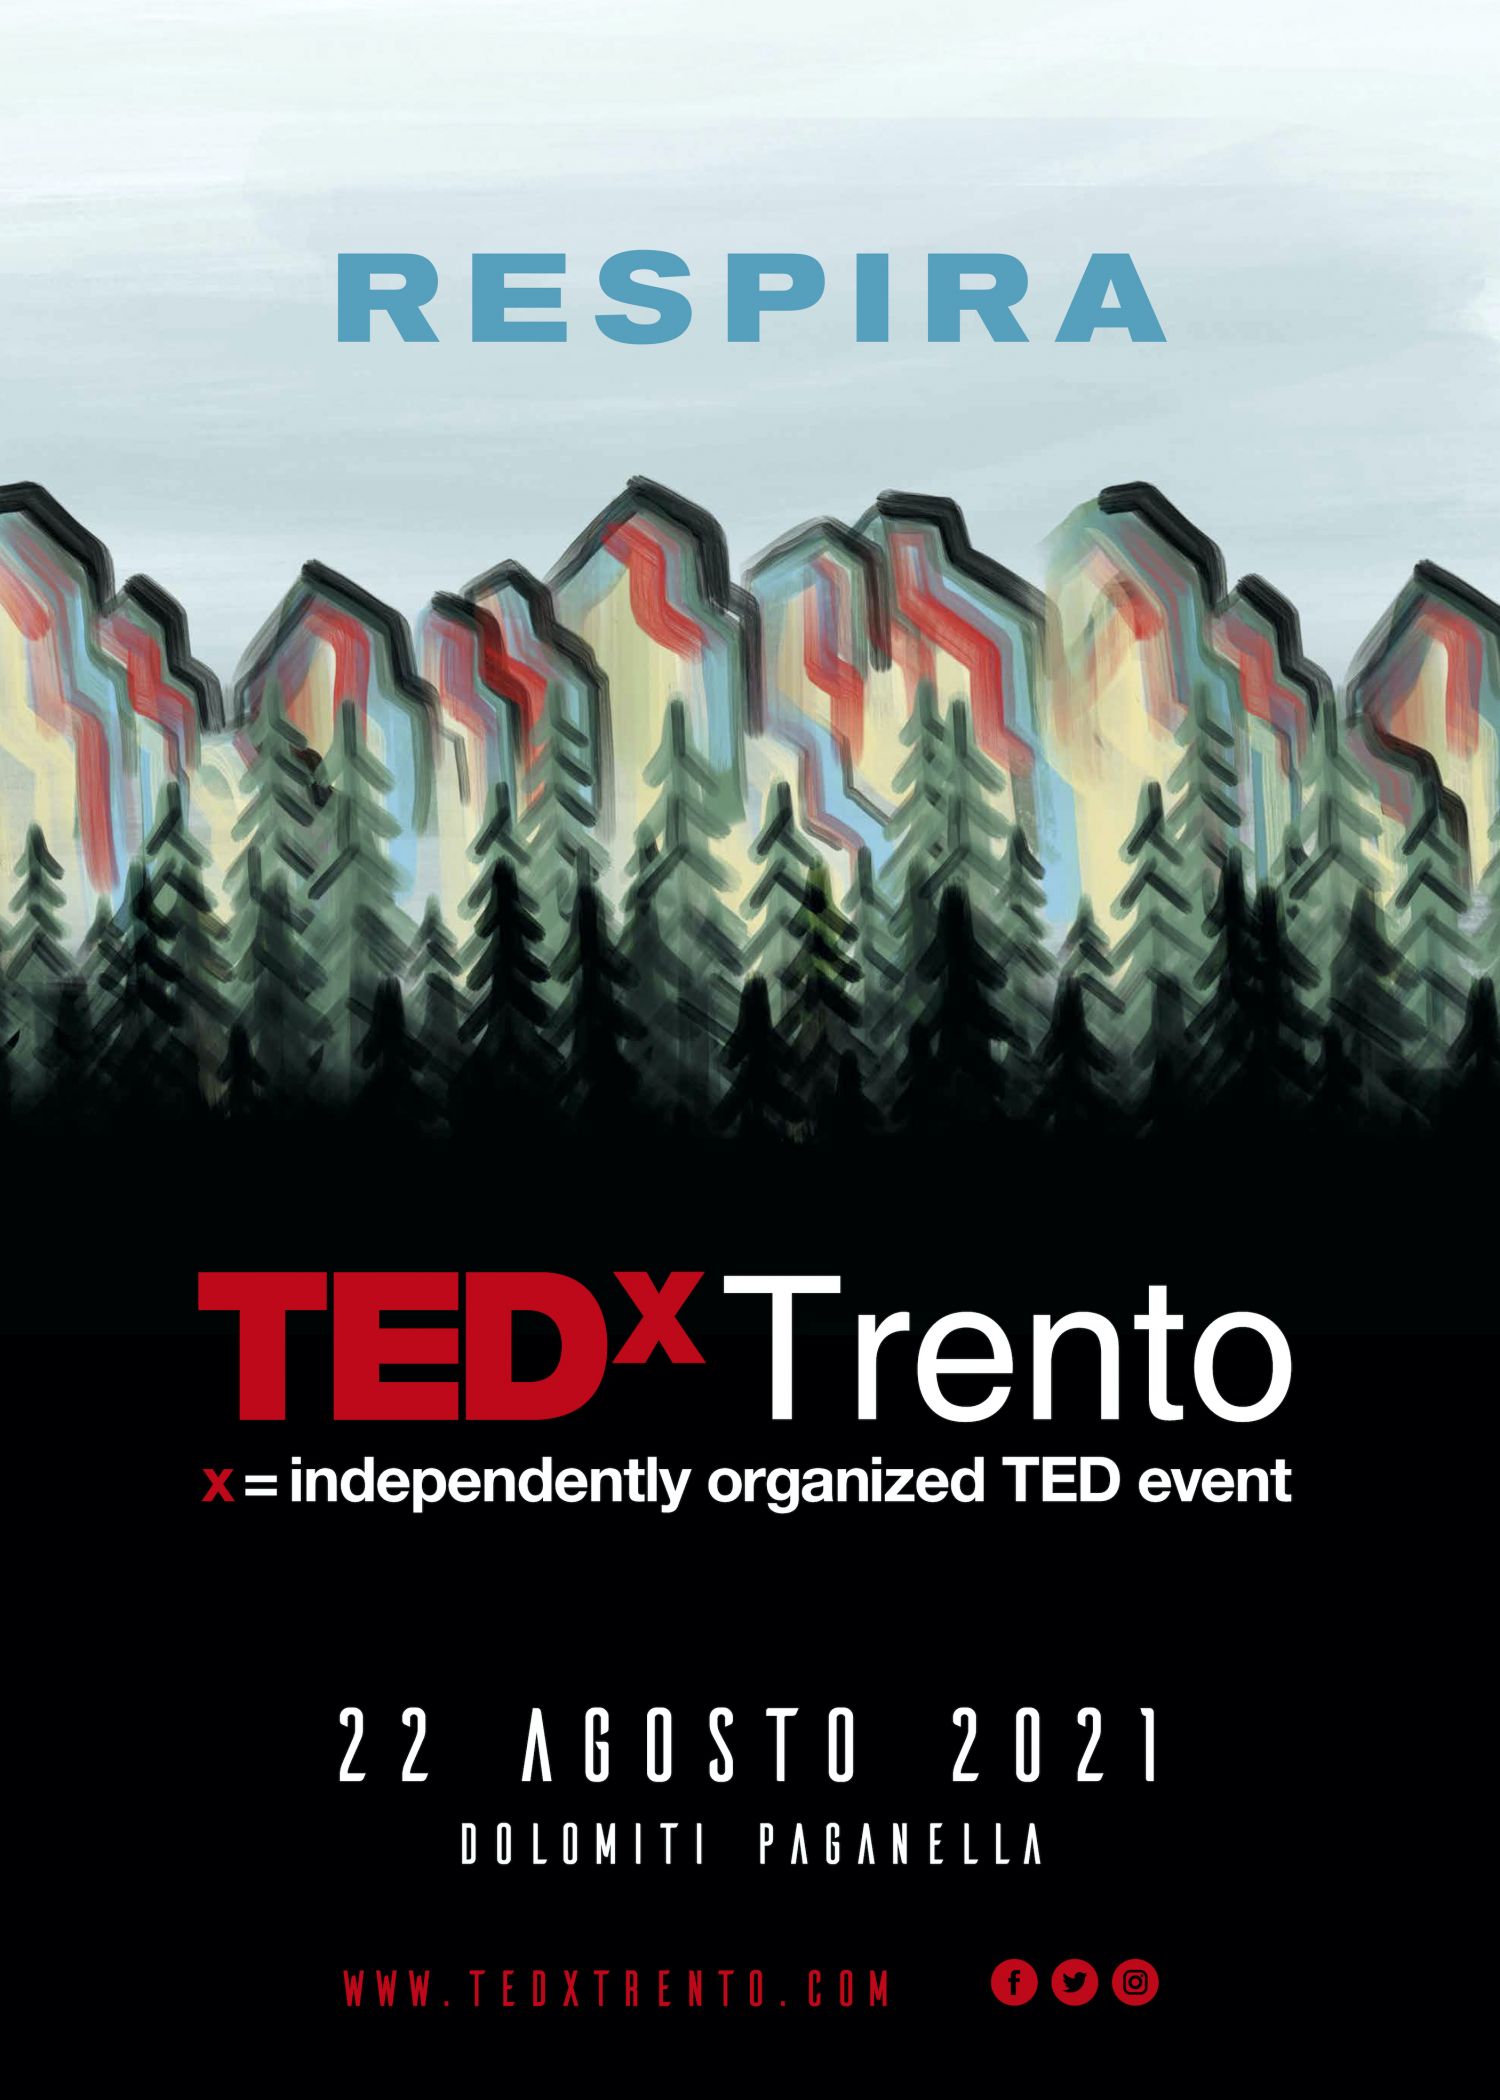 Tedx Trento RESPIRA